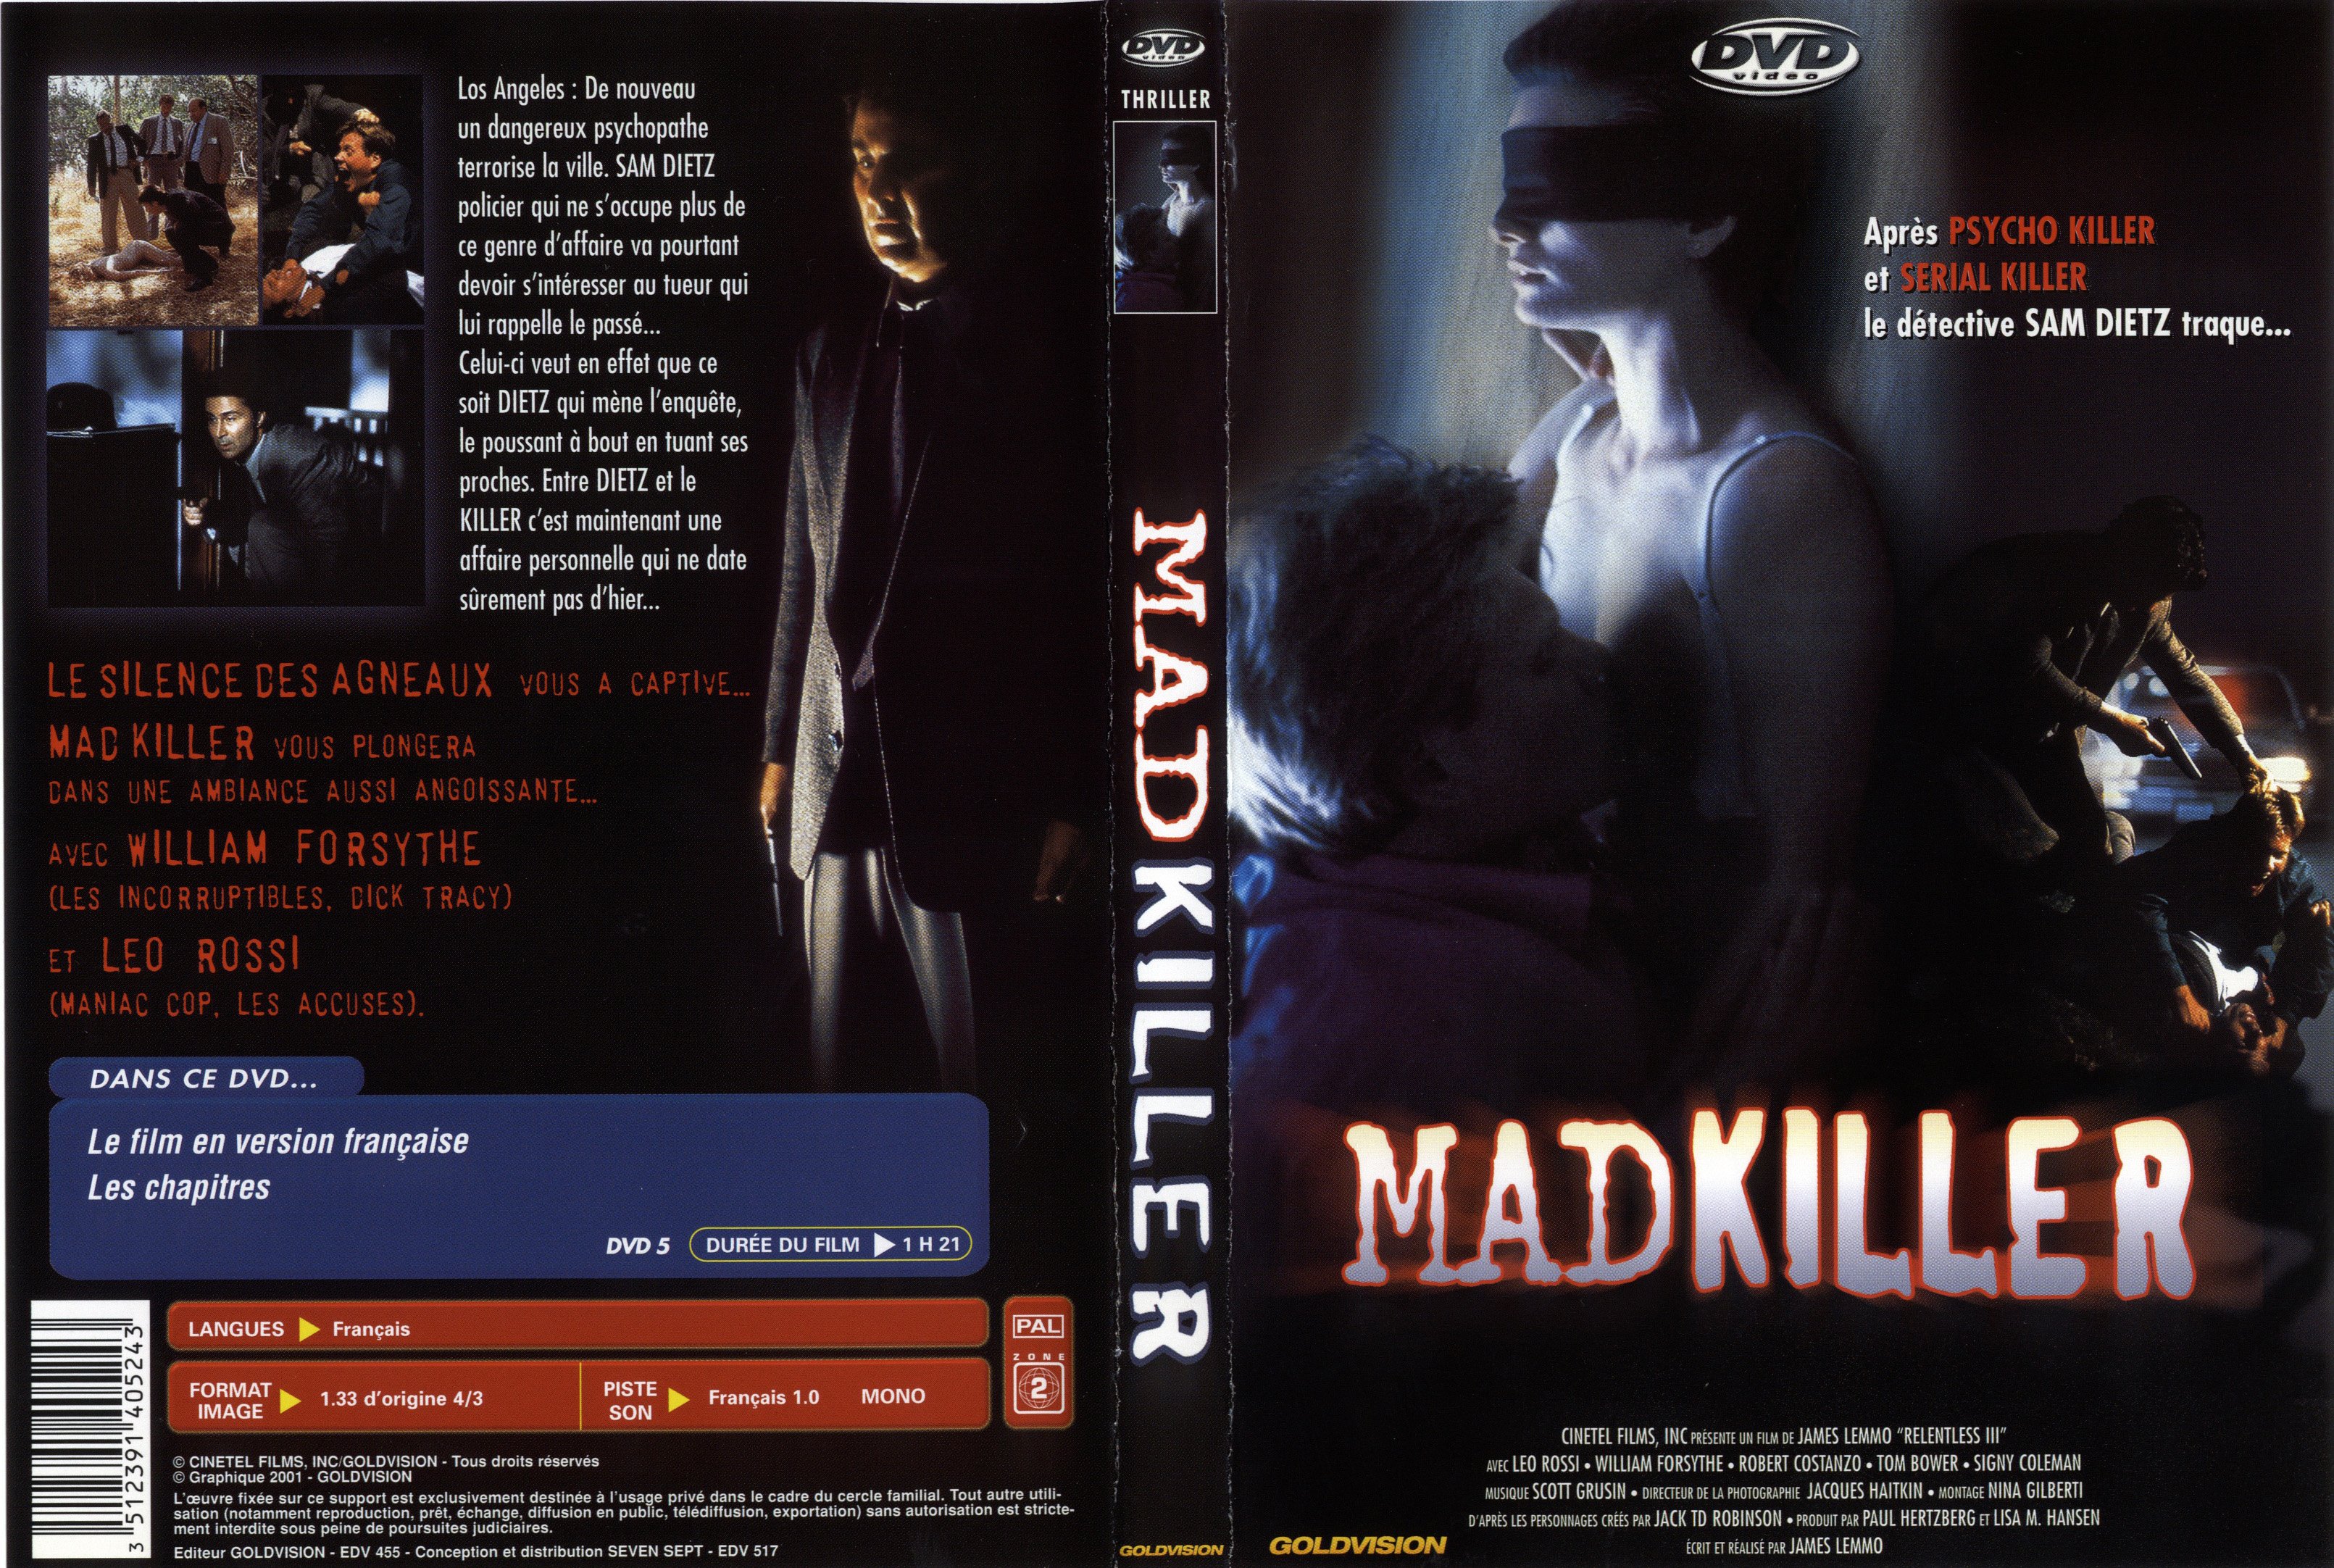 Jaquette DVD Mad Killer